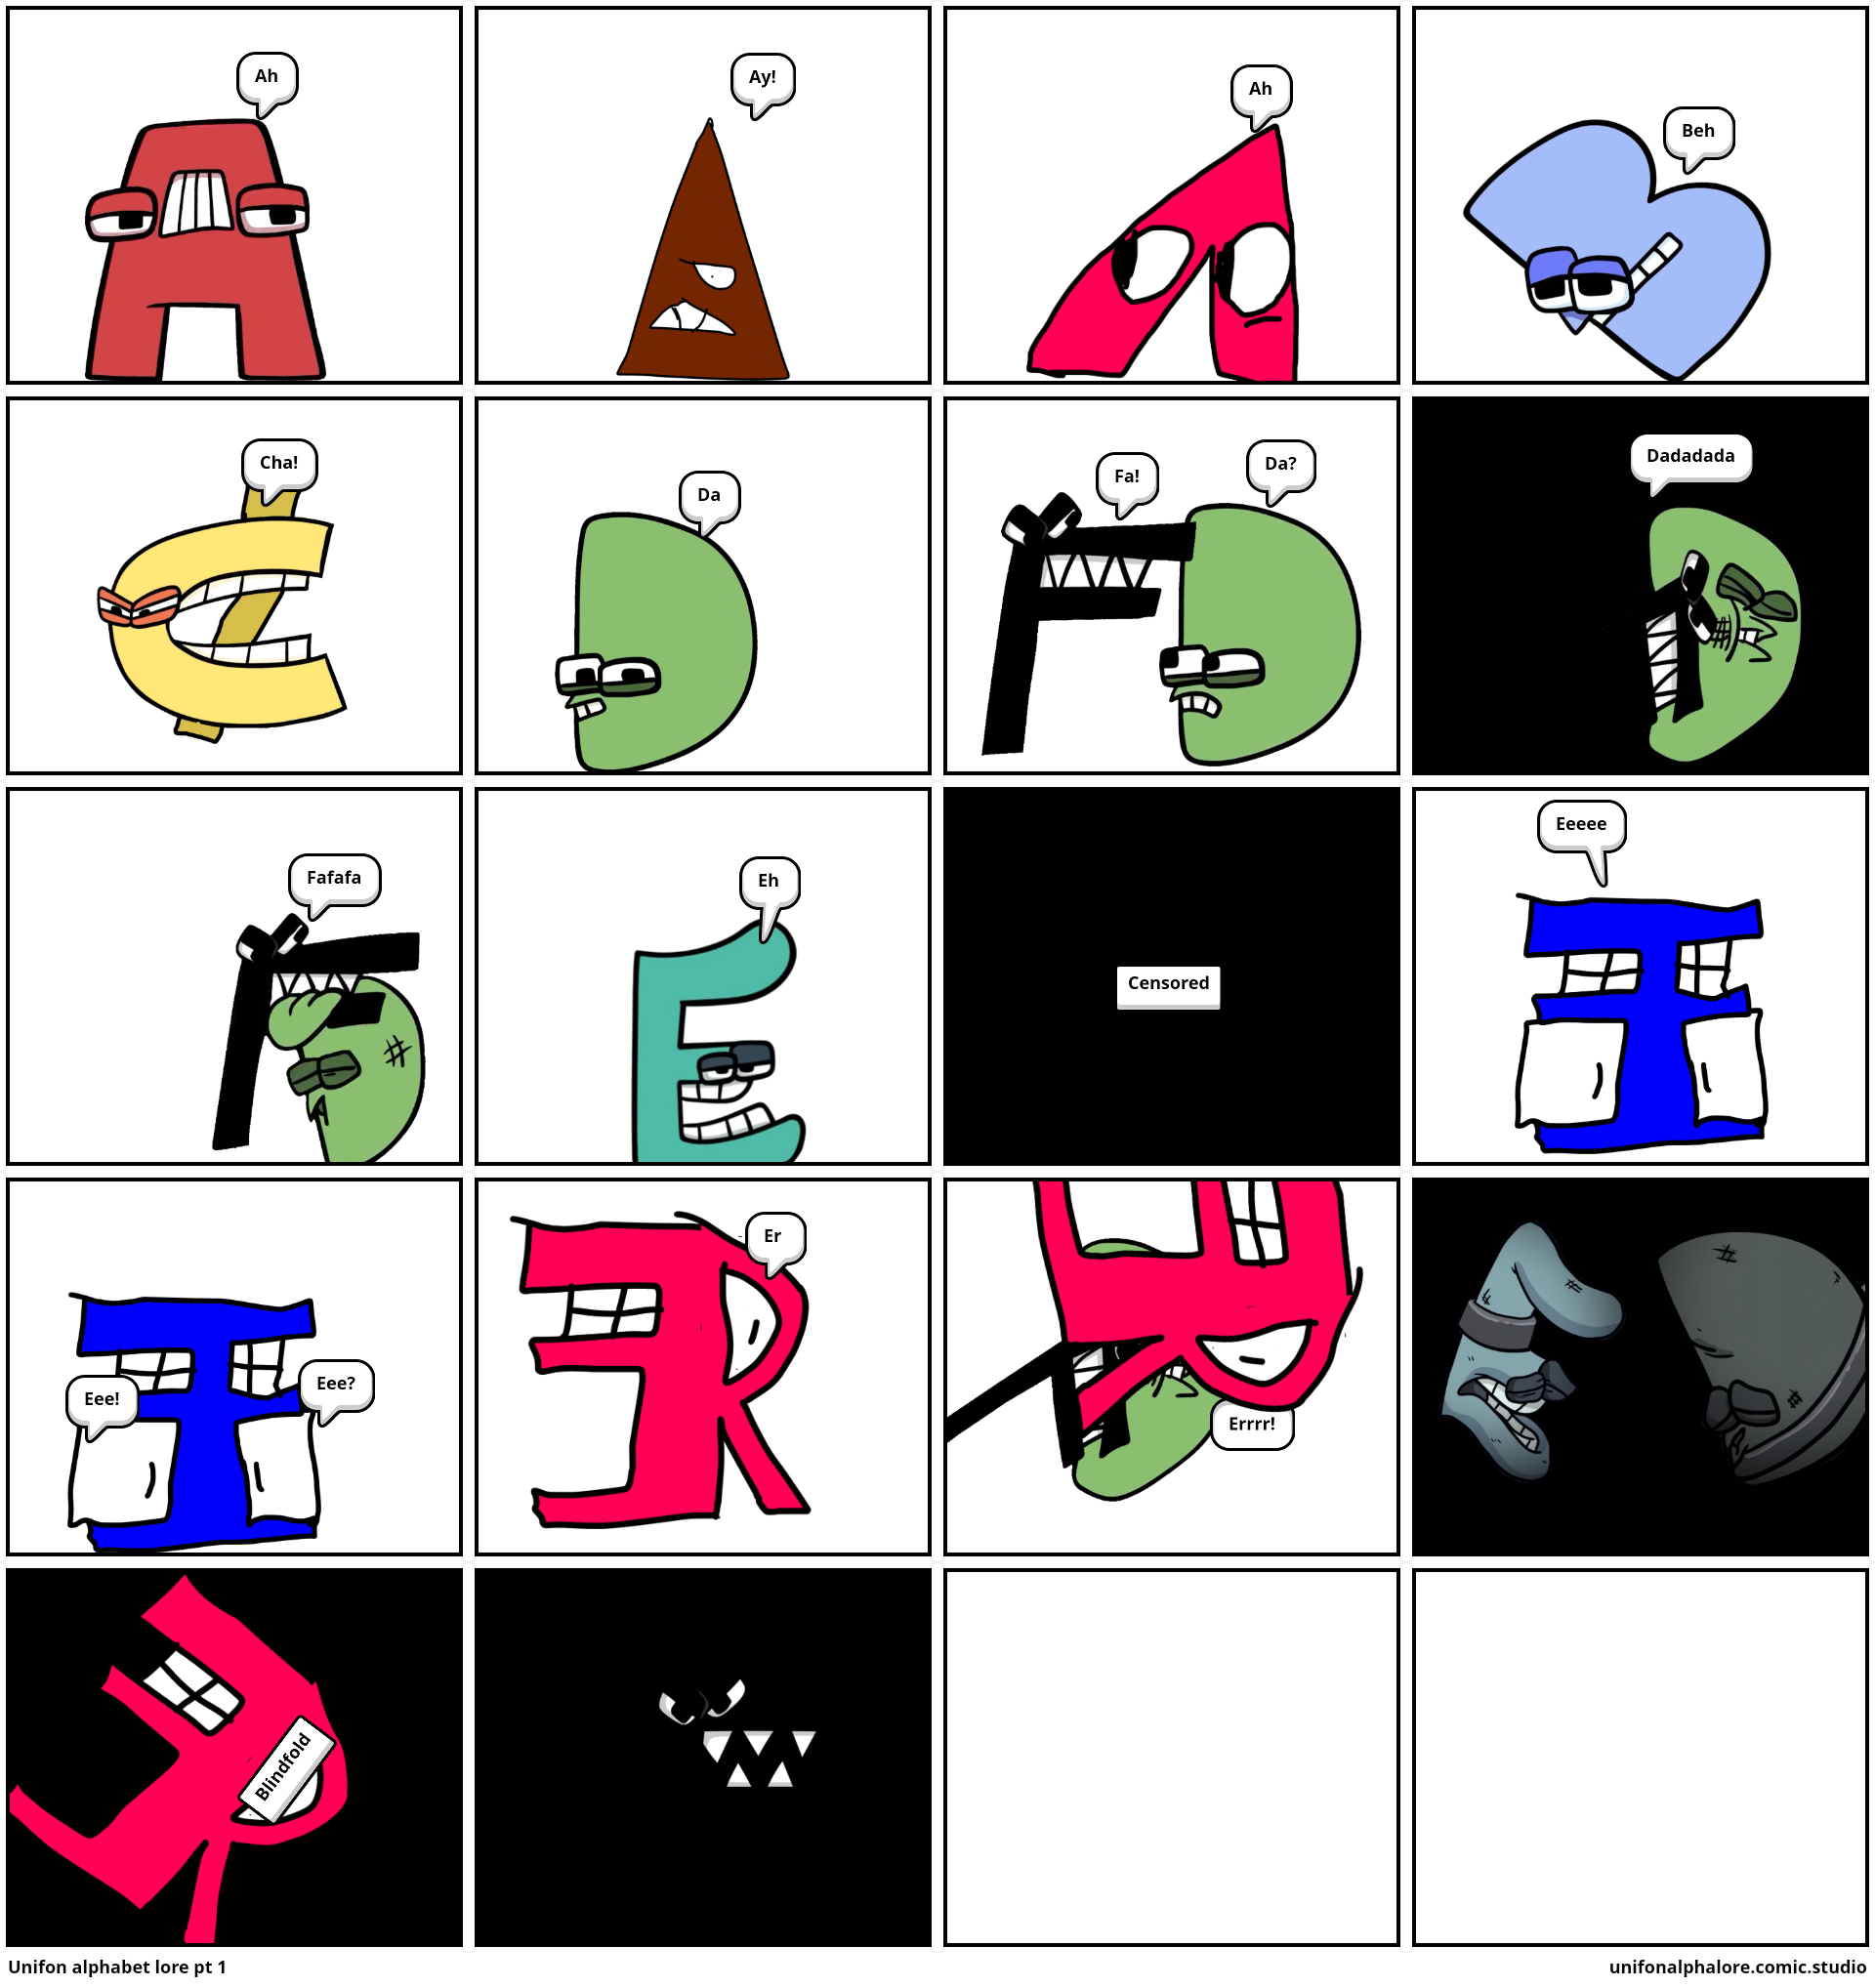 Unifon alphabet lore pt 1